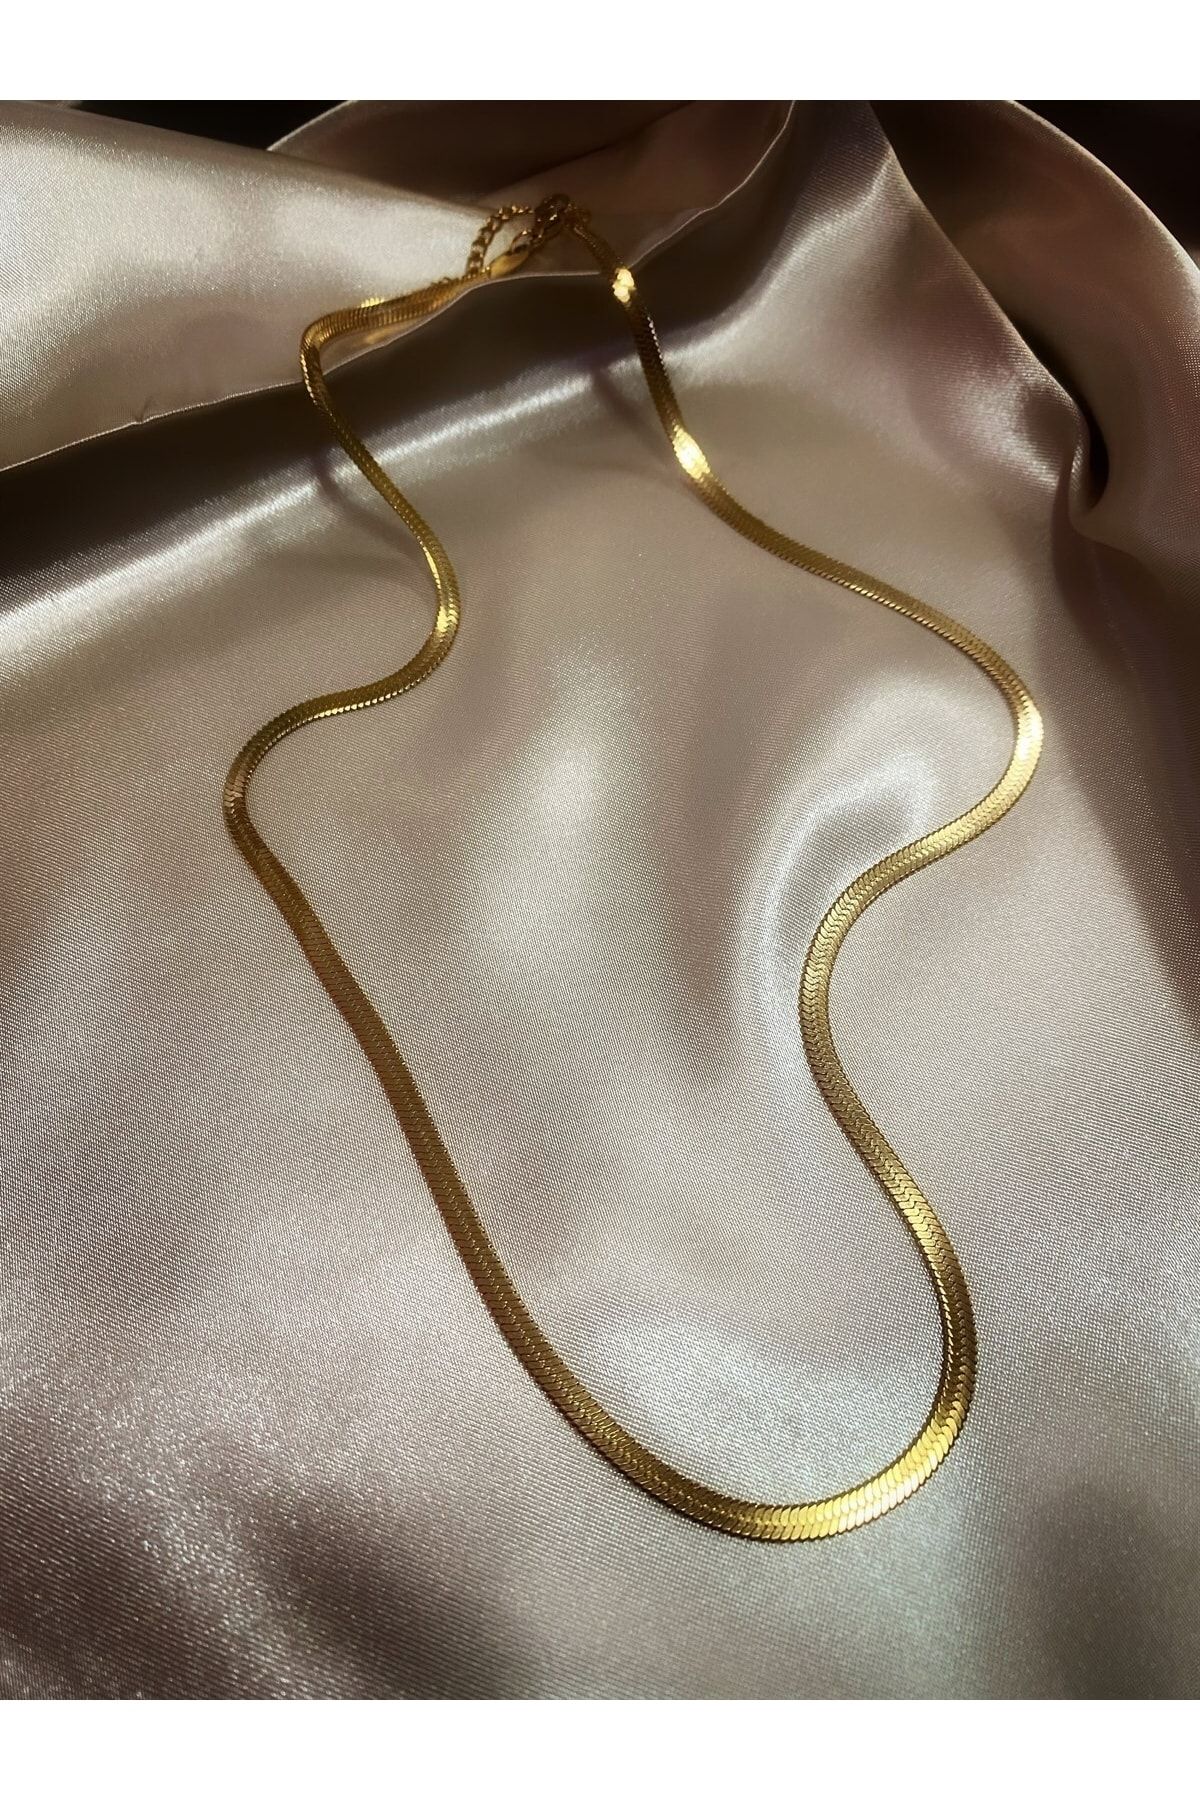 Mascard Altın Kaplama Italyan Zincir Kolye Kadın Çelik Zincir Kolye 45 Cm